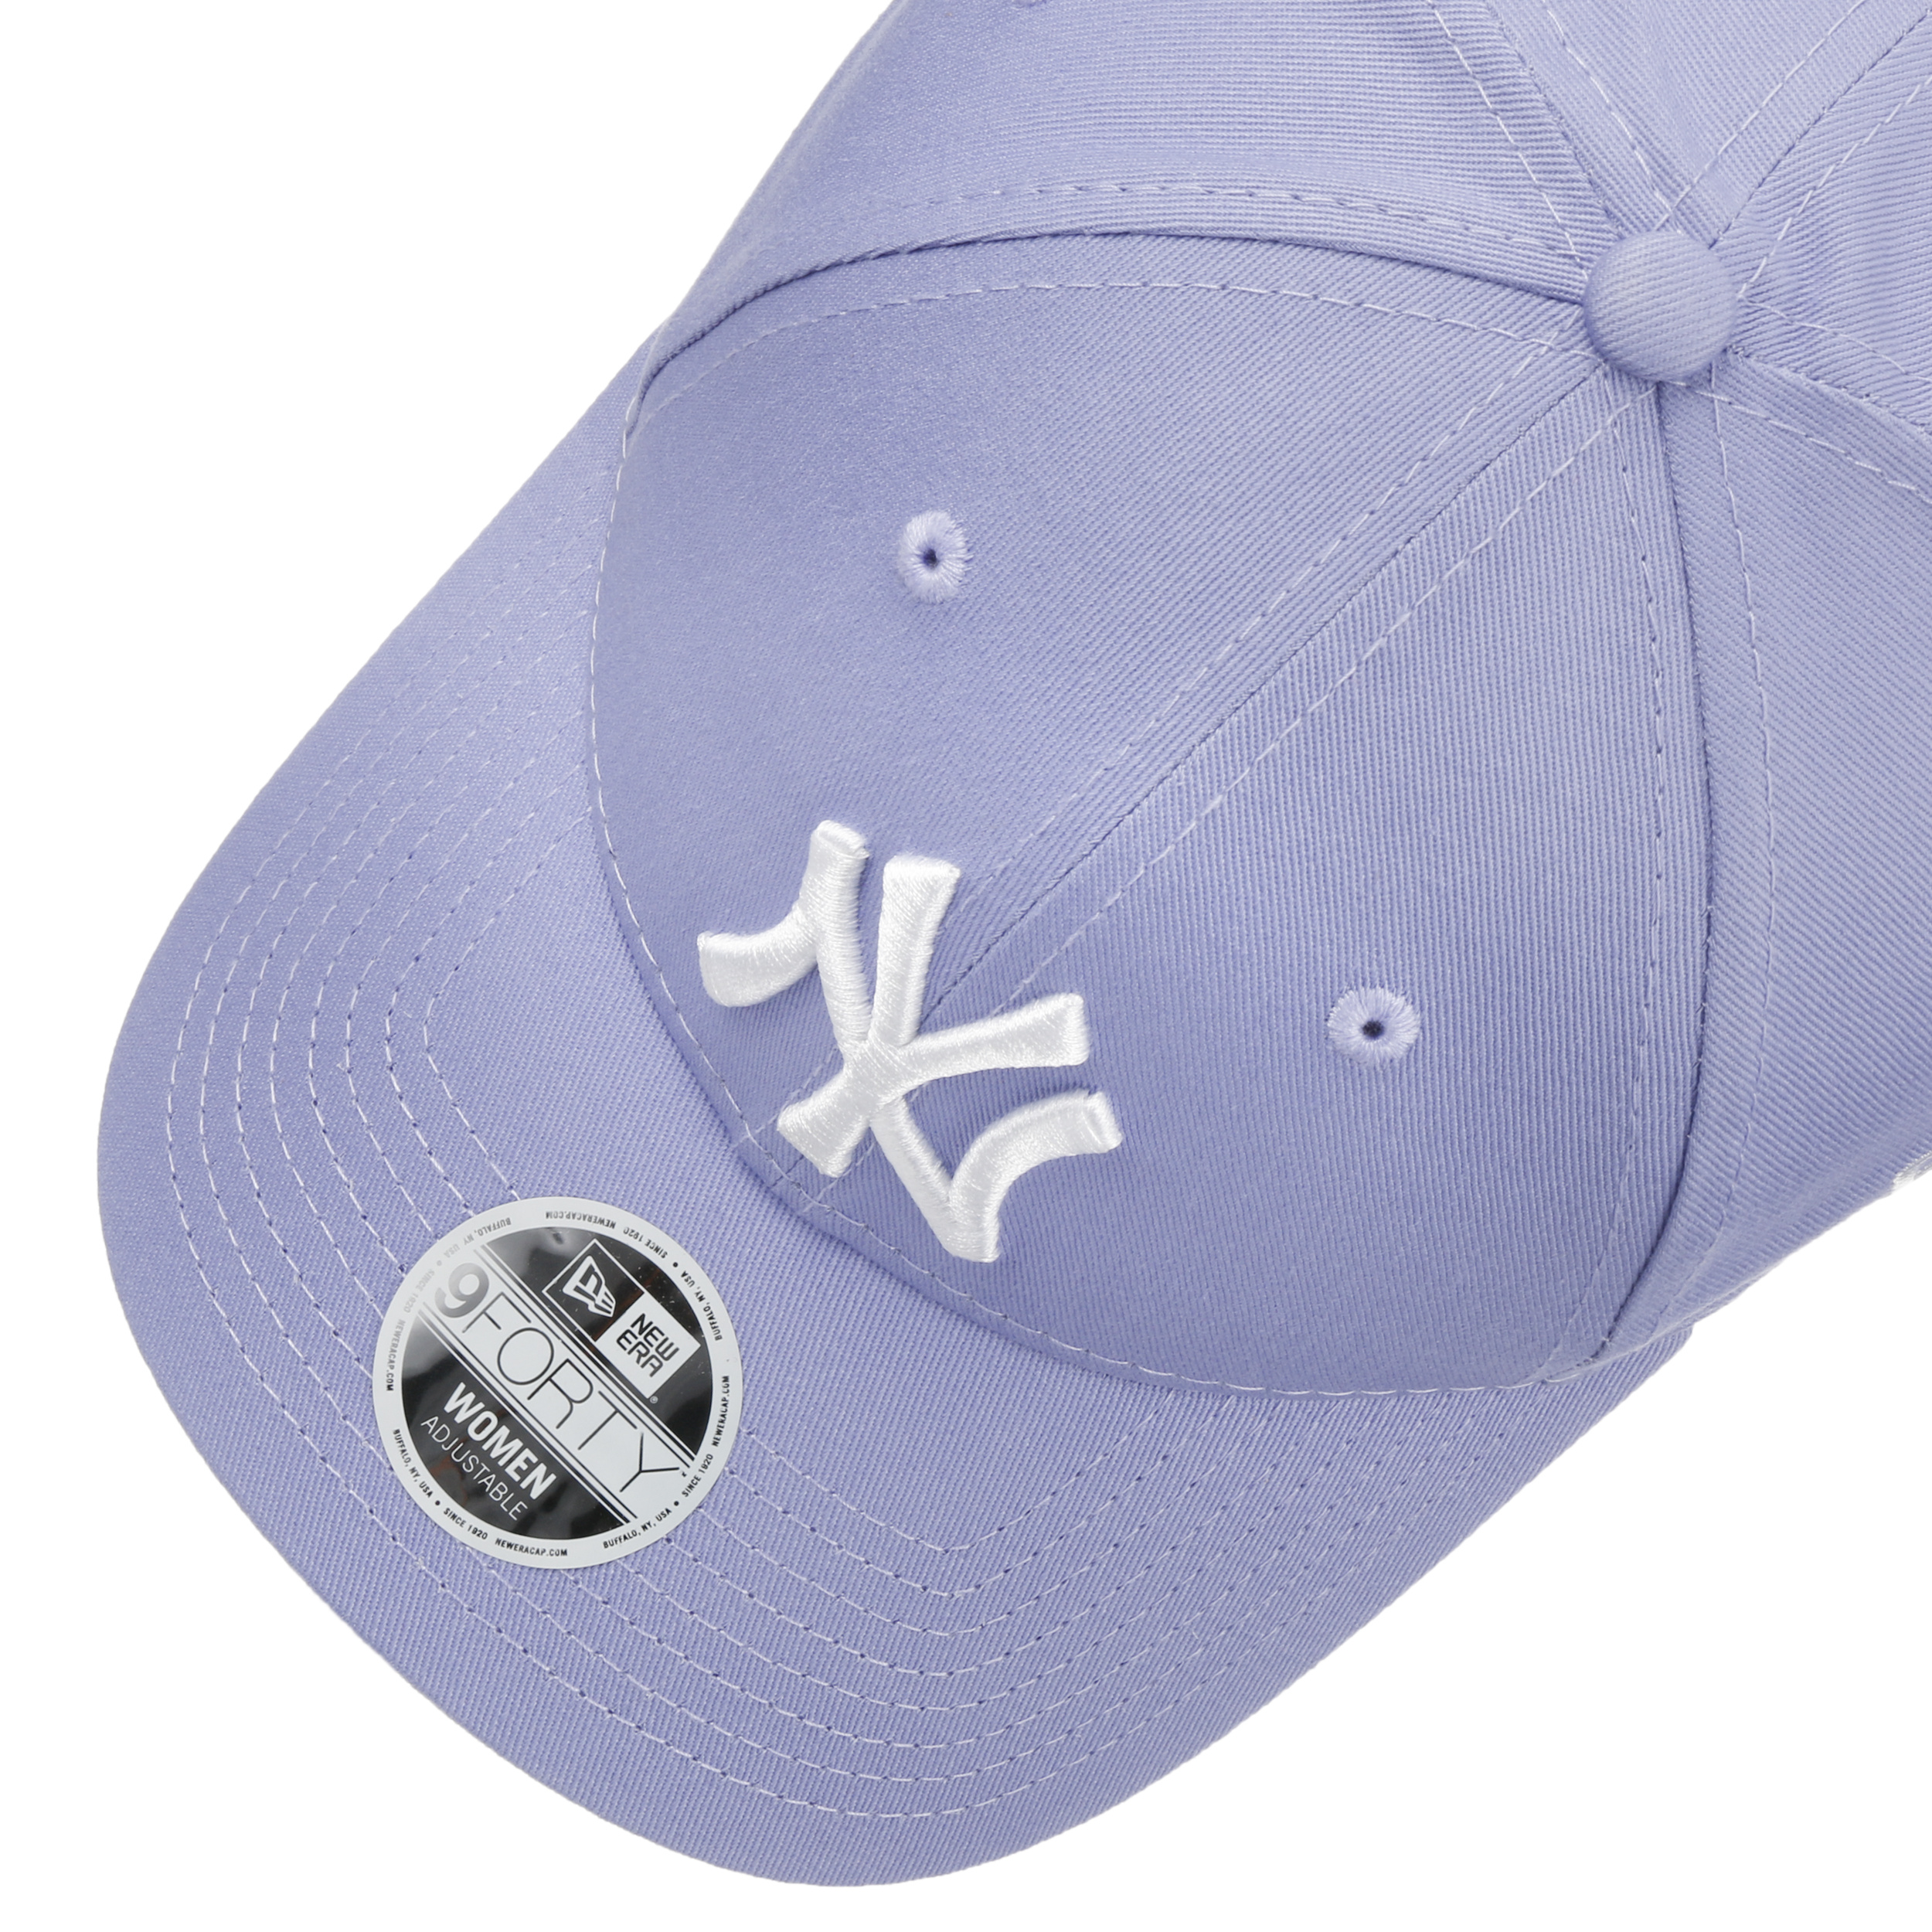 NY baseball cap black and purple - League Ess Cap 9Forty NY black